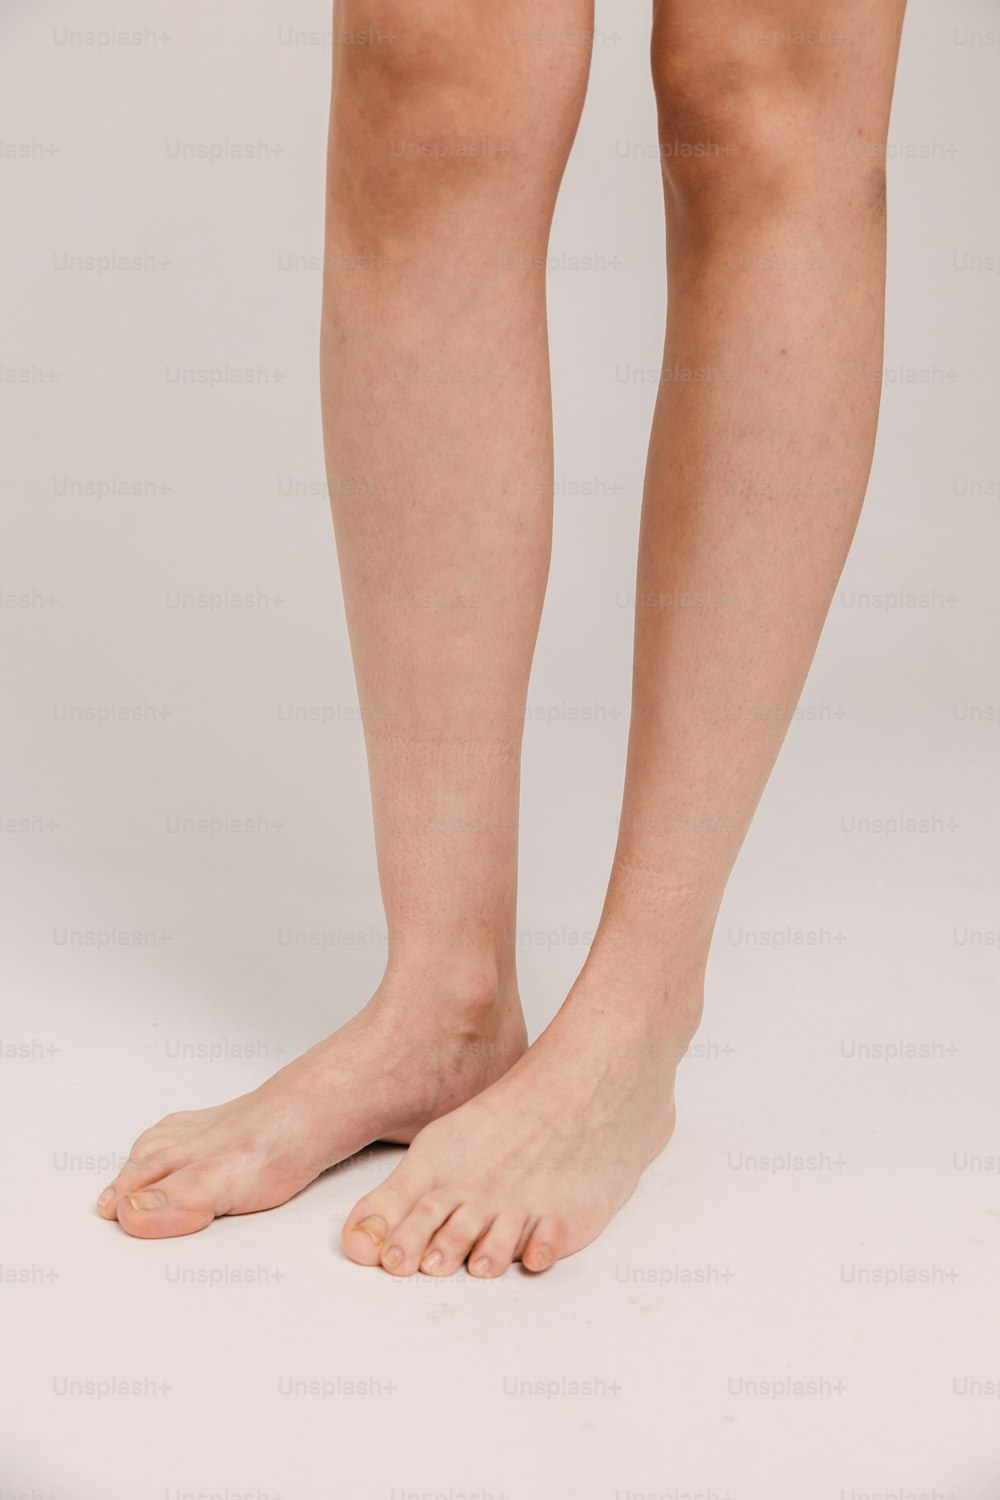 Die nackten Beine und Beine einer Frau werden gezeigt